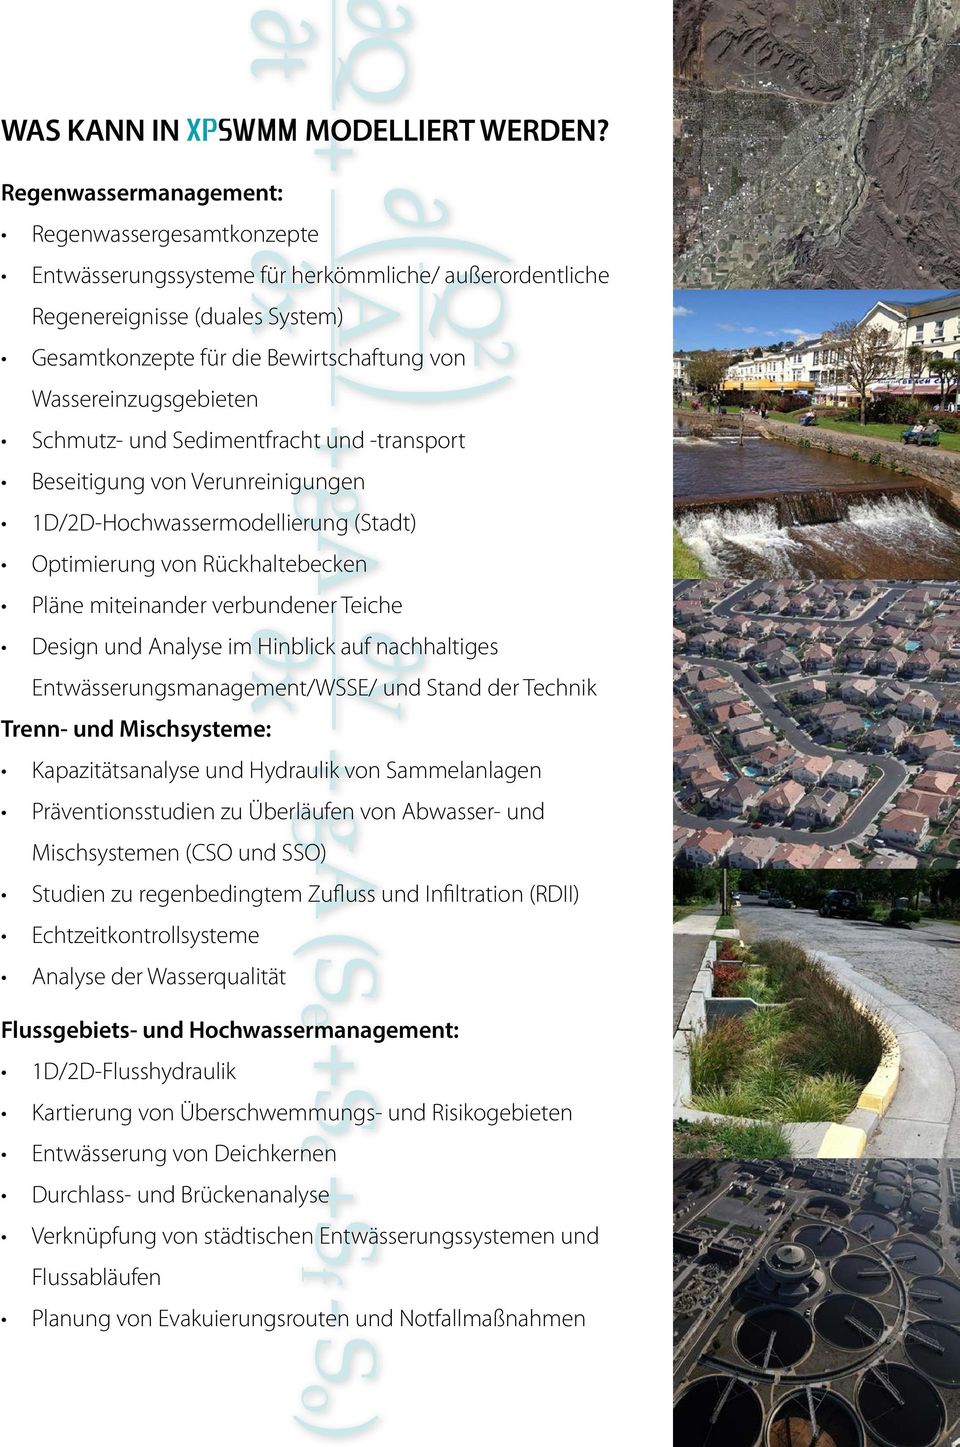 Wassereinzugsgebieten Schmutz- und Sedimentfracht und -transport Beseitigung von Verunreinigungen 1D/2D-Hochwassermodellierung (Stadt) Optimierung von Rückhaltebecken Pläne miteinander verbundener